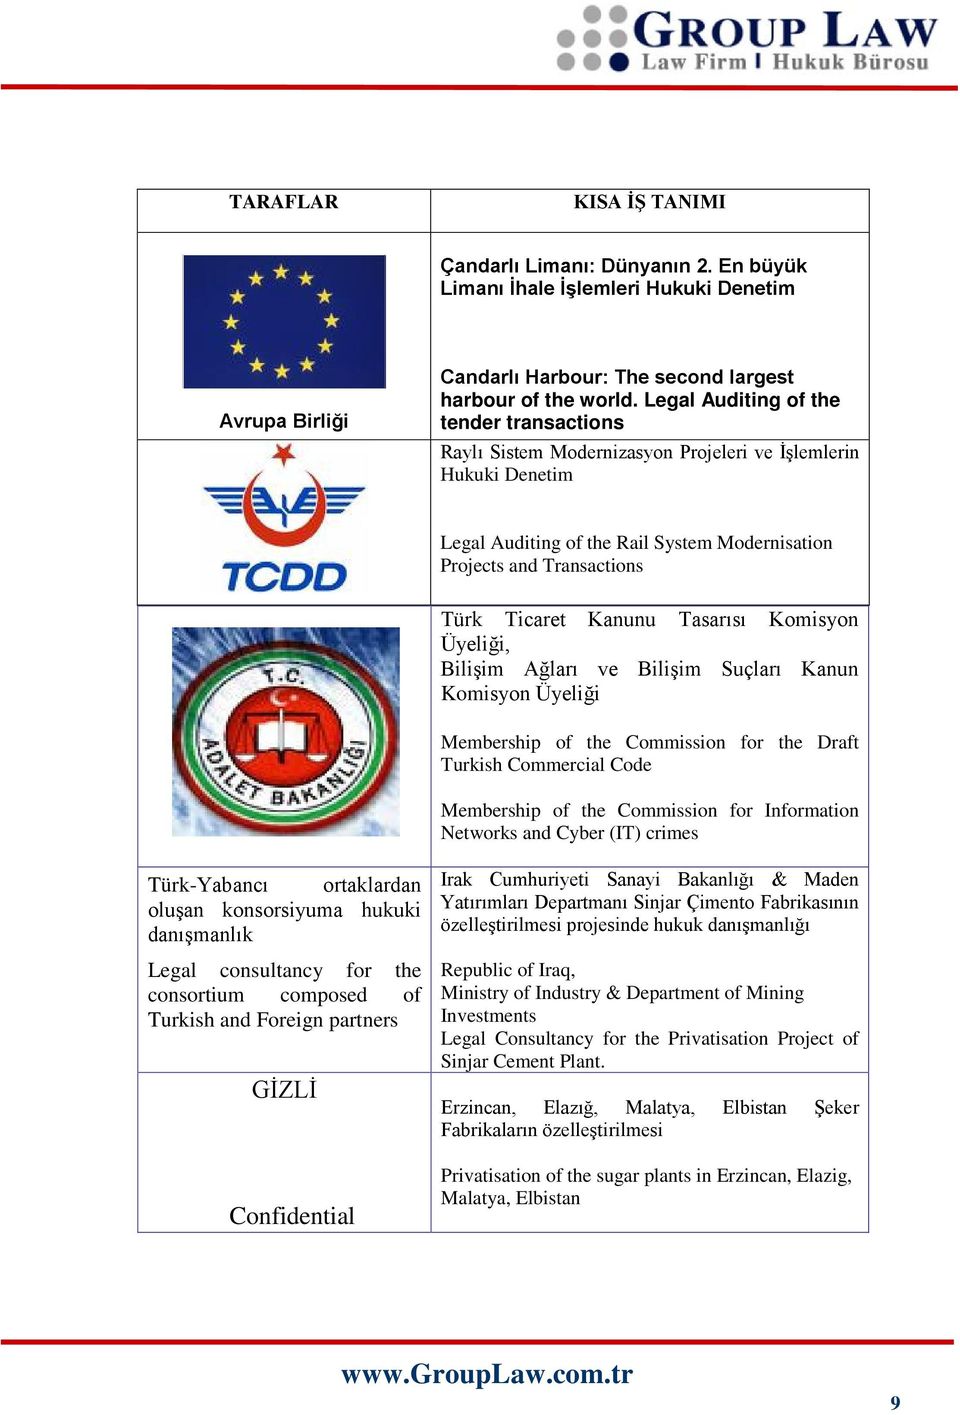 Kanunu Tasarısı Komisyon Üyeliği, Bilişim Ağları ve Bilişim Suçları Kanun Komisyon Üyeliği Membership of the Commission for the Draft Turkish Commercial Code Membership of the Commission for